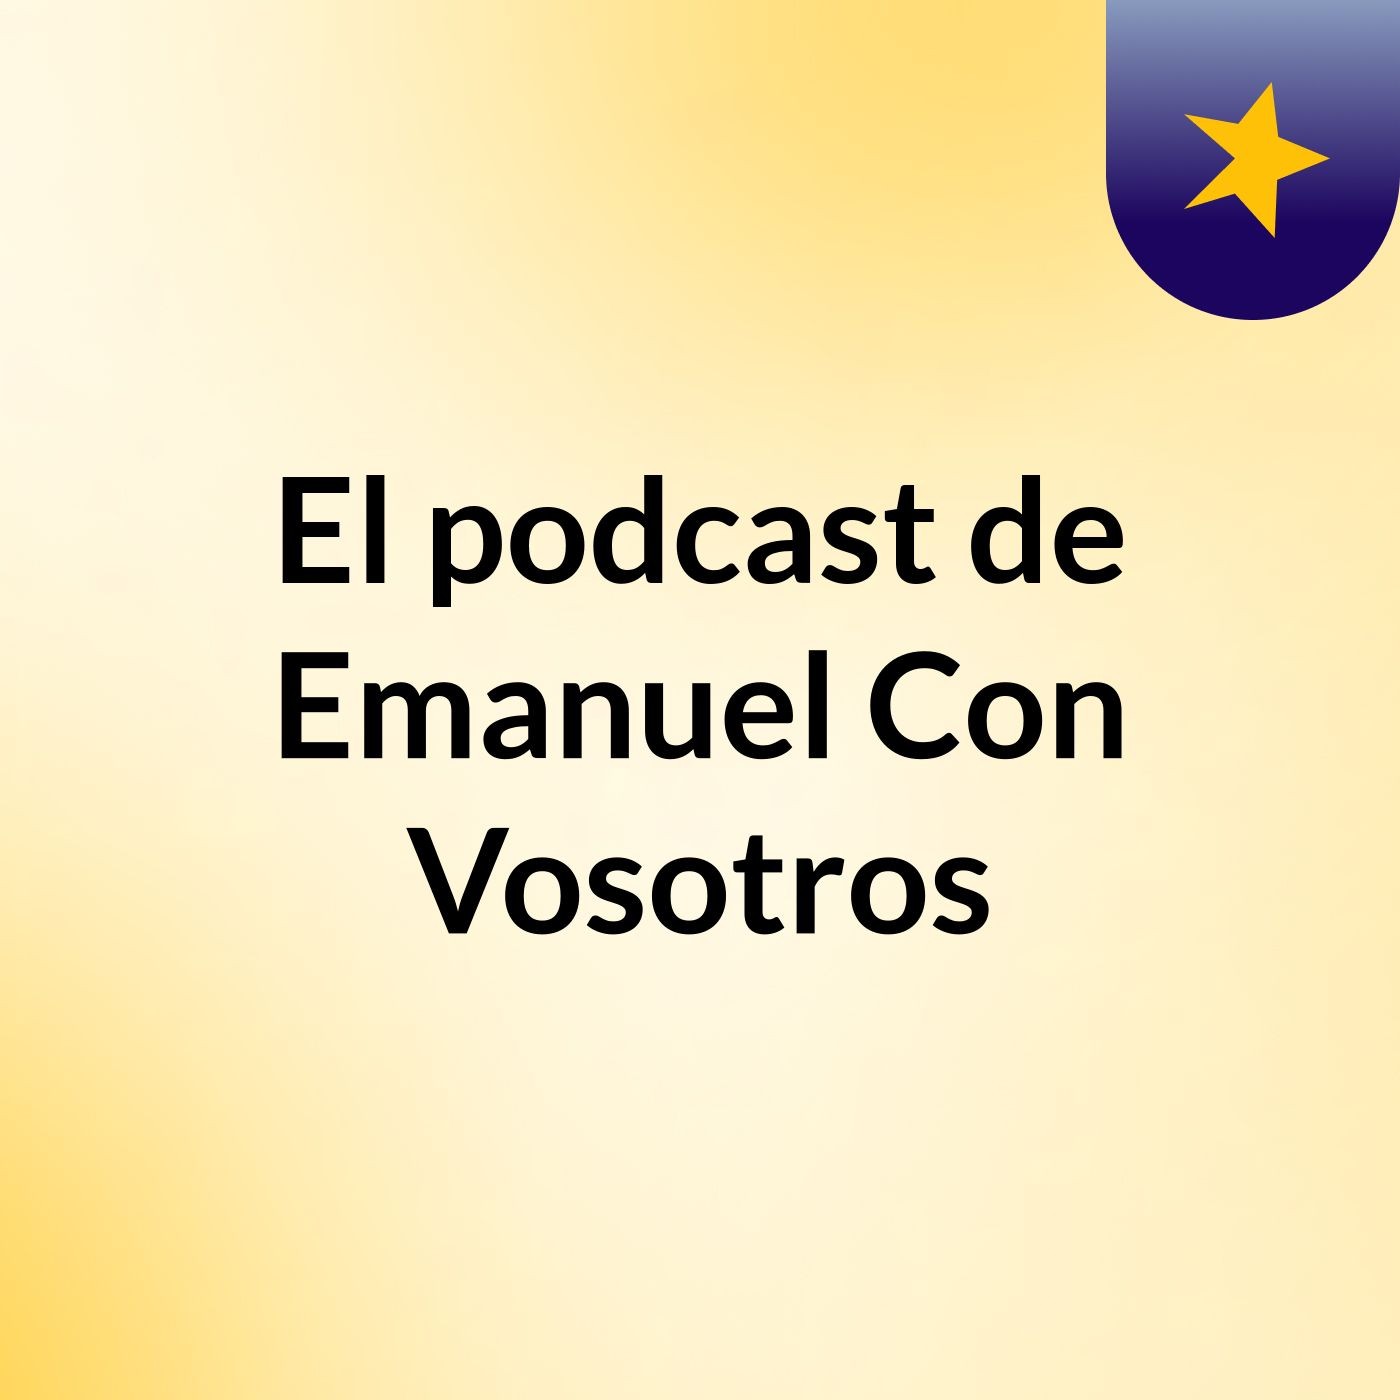 El podcast de Emanuel Con Vosotros